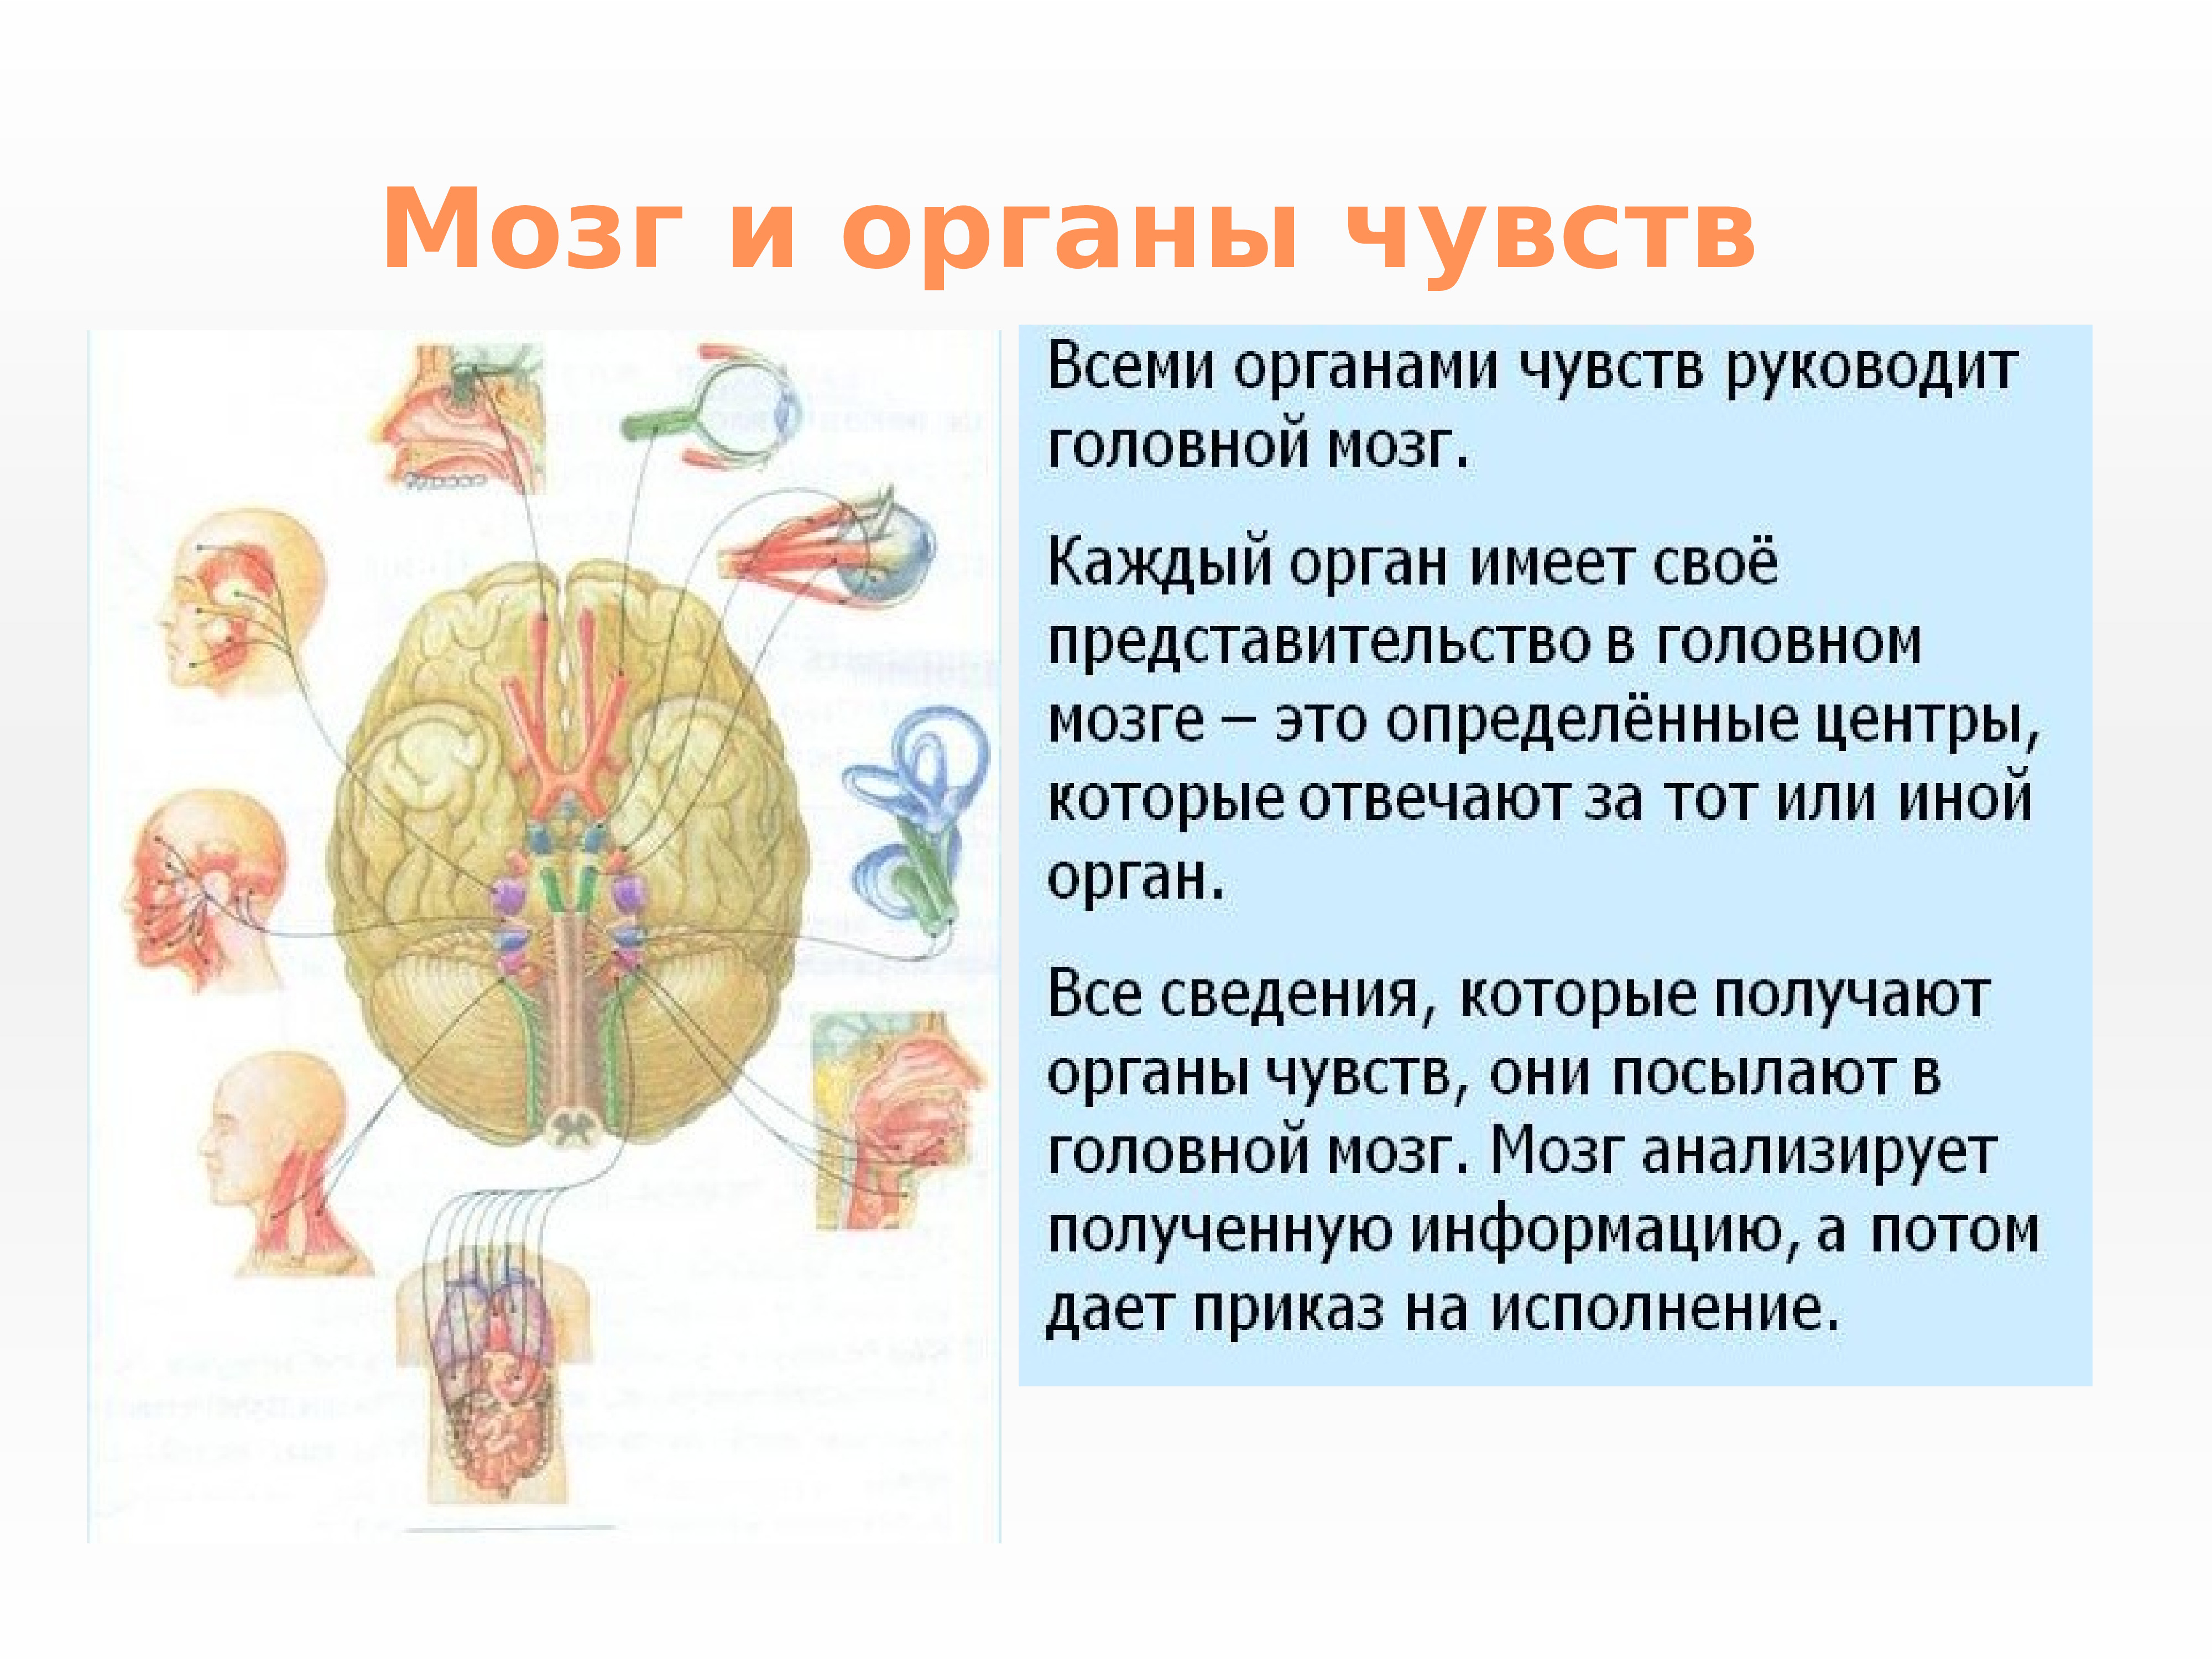 Значение в организме головного мозга. Нервная система и органы чувств система человека. Нервная система структура организма. Строение и функции органов нервной системы. Нервная система и органы чувств строение функция.